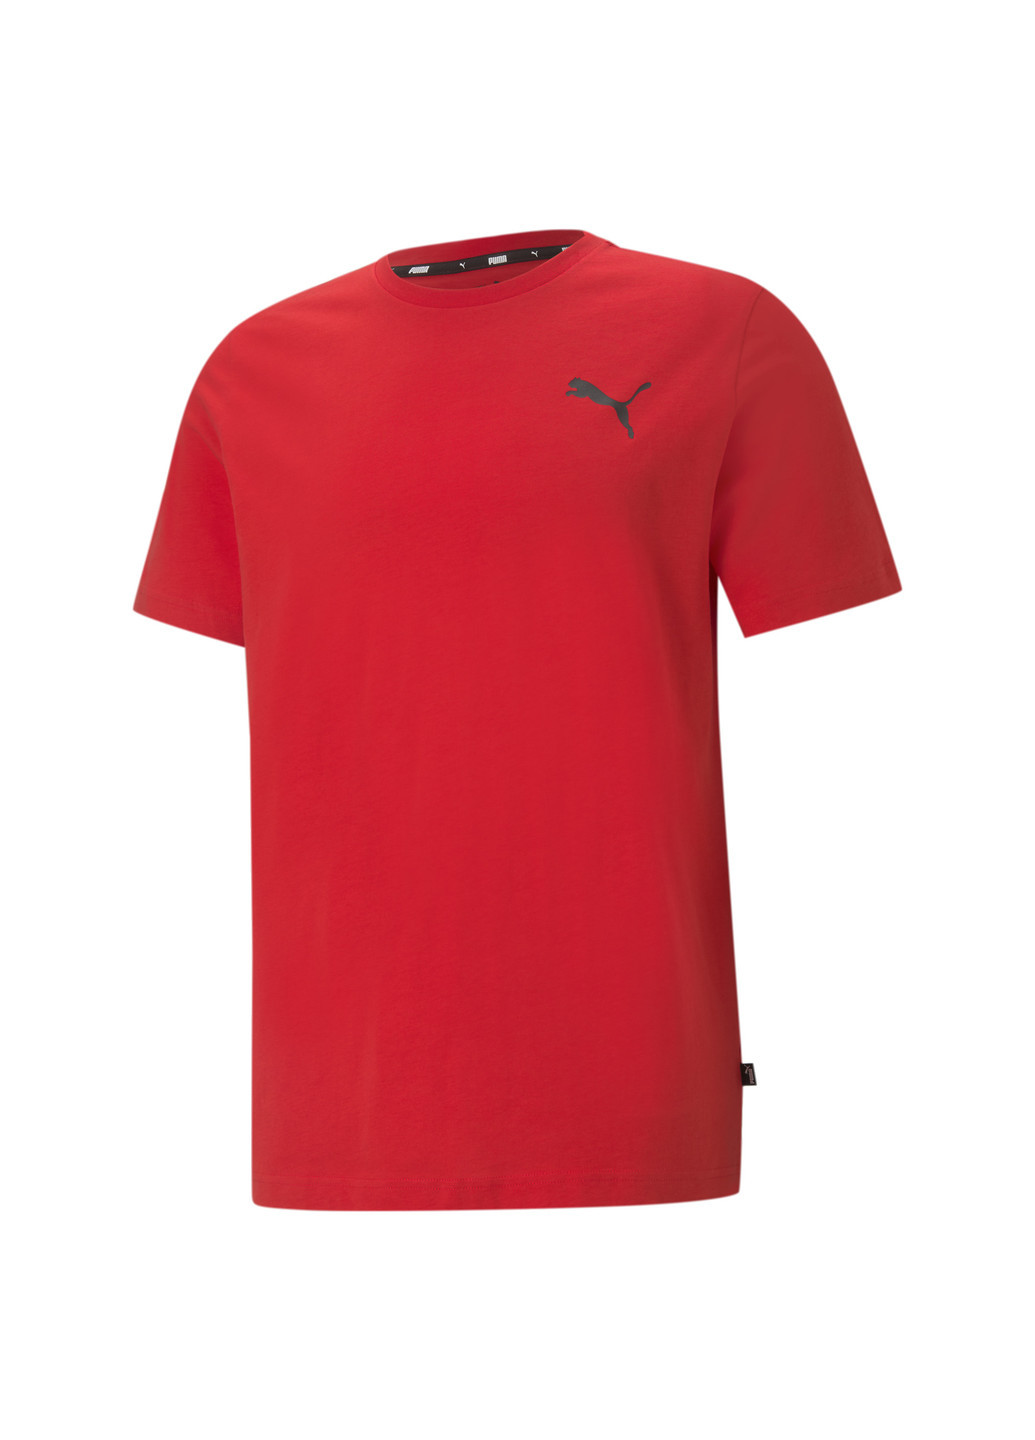 Красная демисезонная футболка essentials small logo men's tee Puma